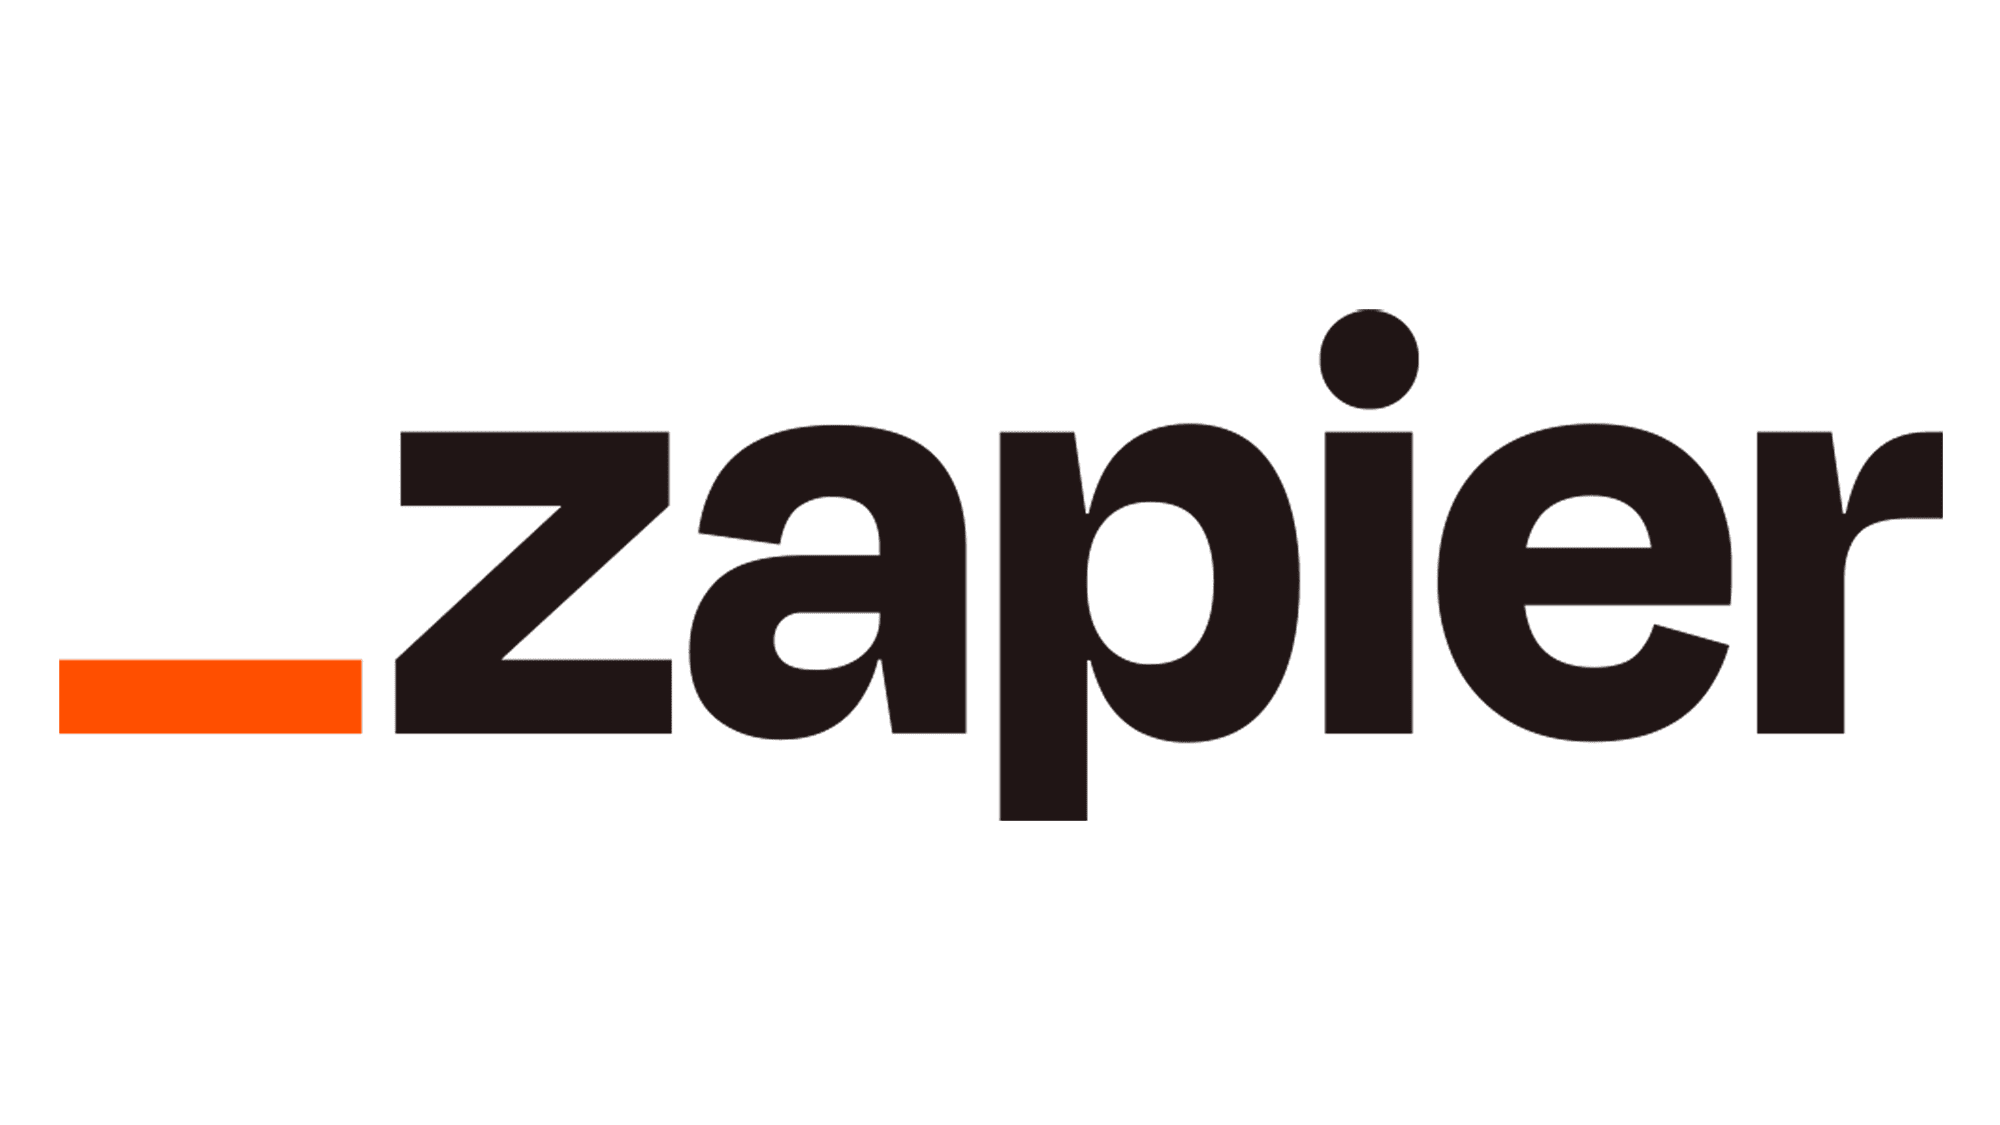 Zapier-Logo